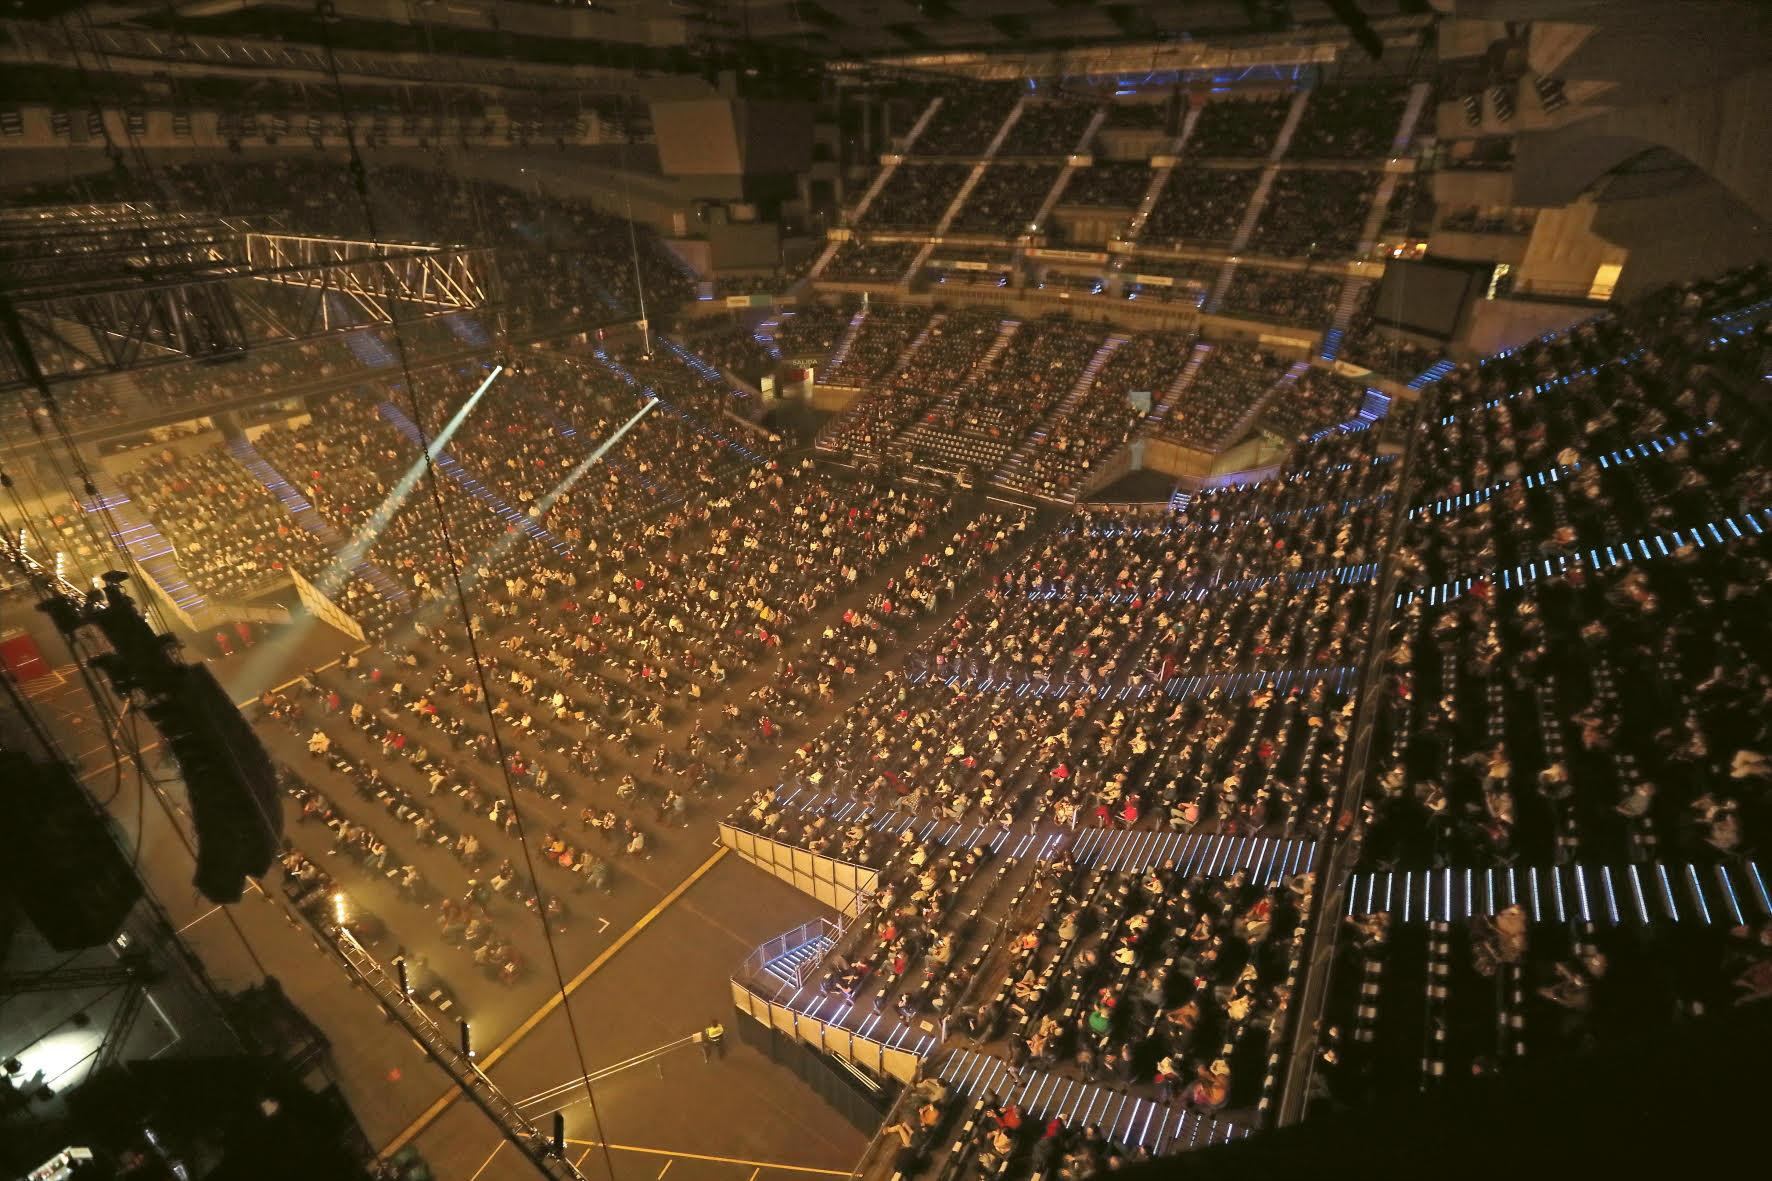 Vista superior del concierto de Raphael / WIZINK CENTER